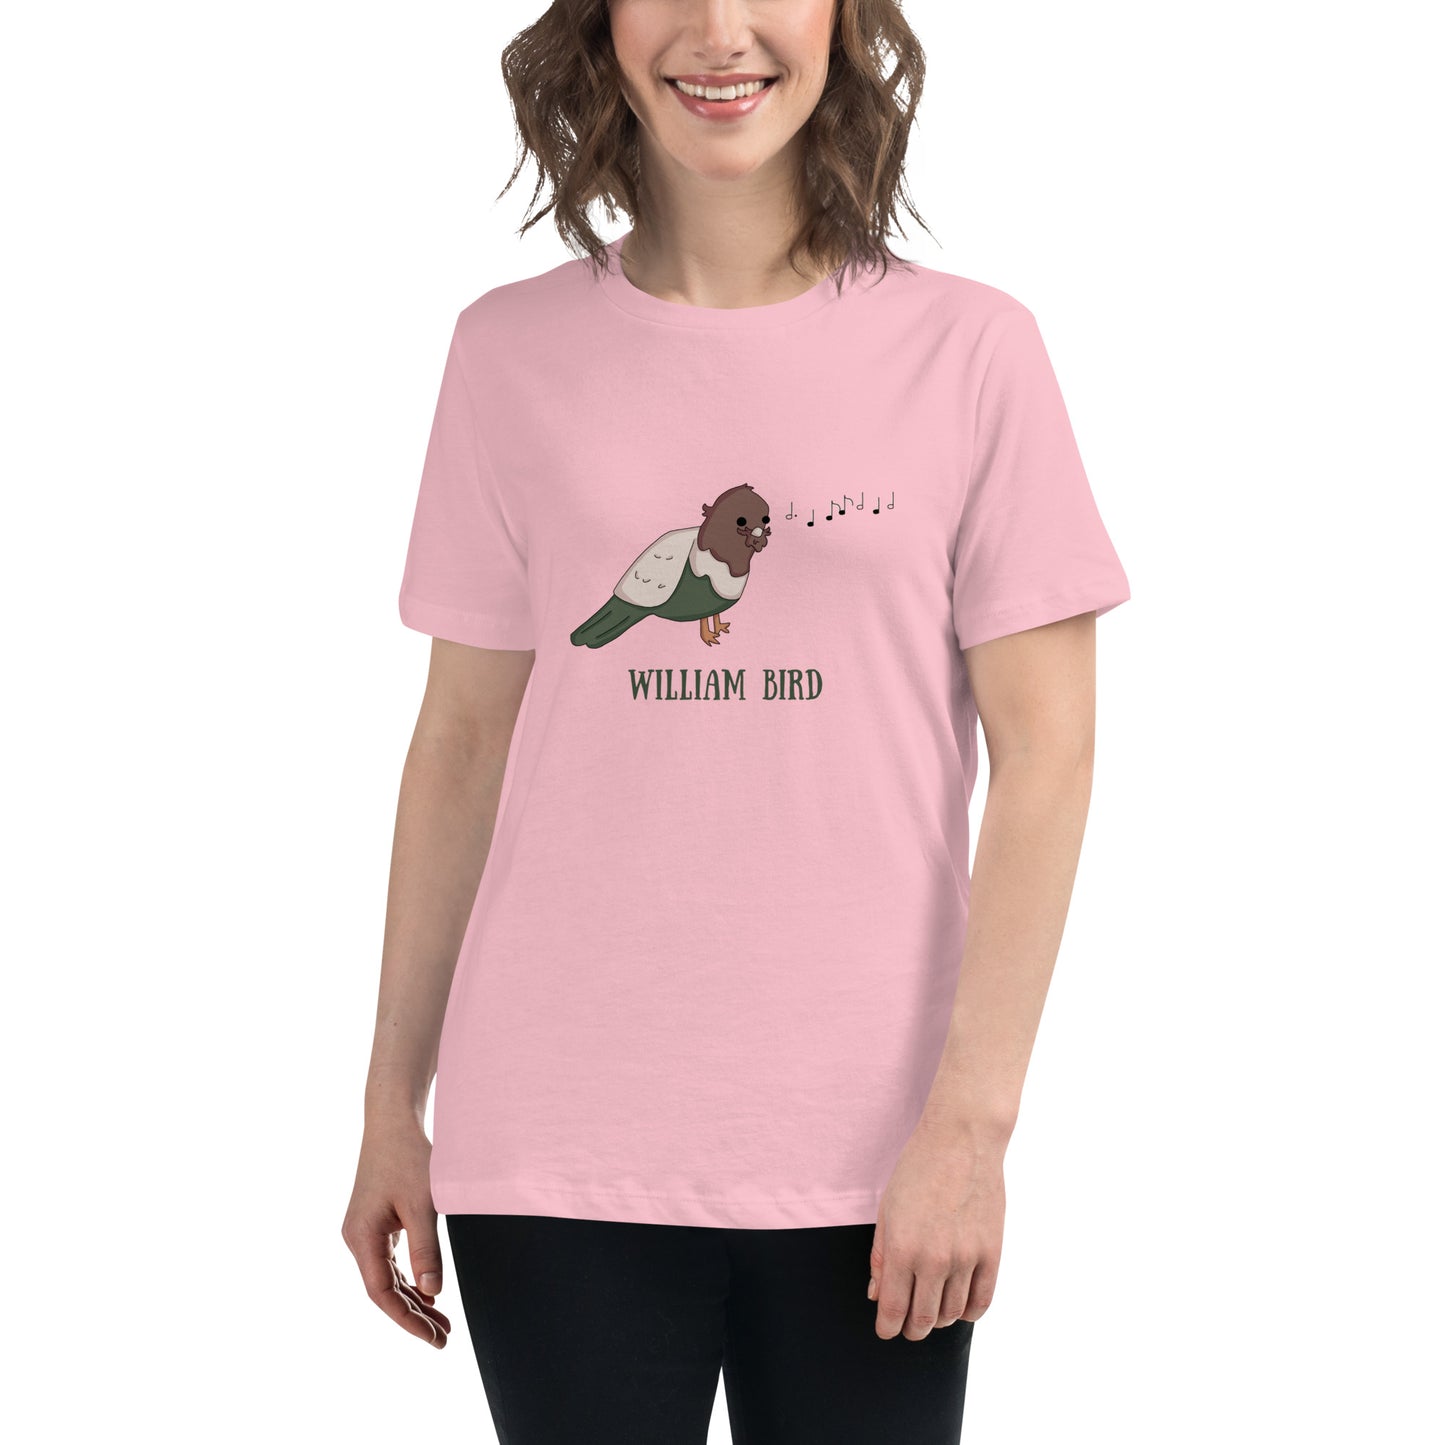 William Bird - Women's Relaxed T-Shirt